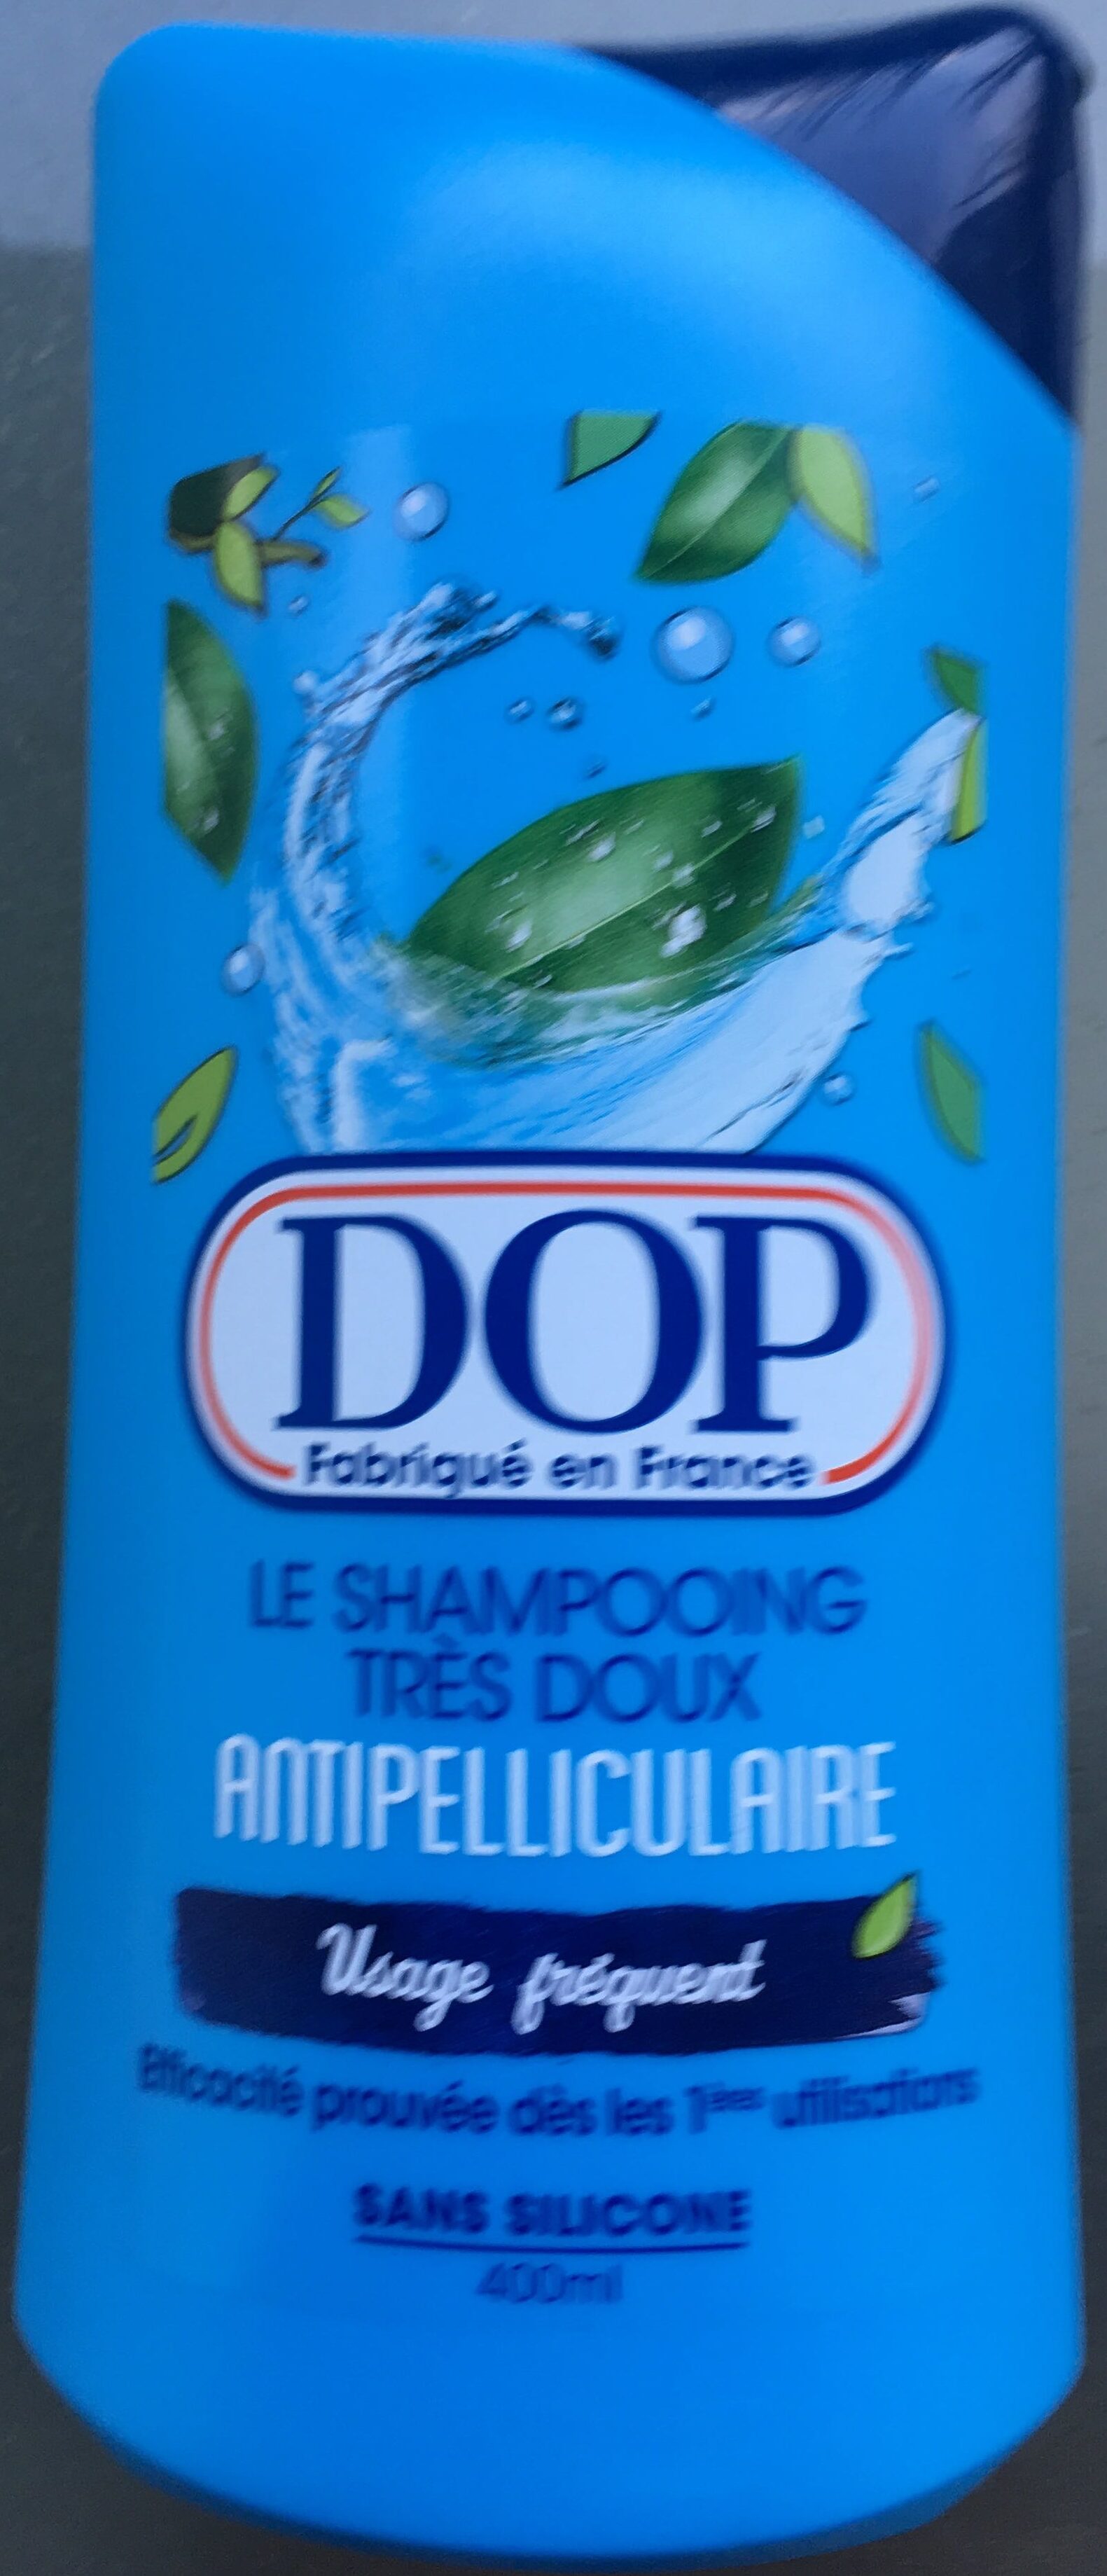 Le Shampooing Très Doux Antipelliculaire - Produto - fr